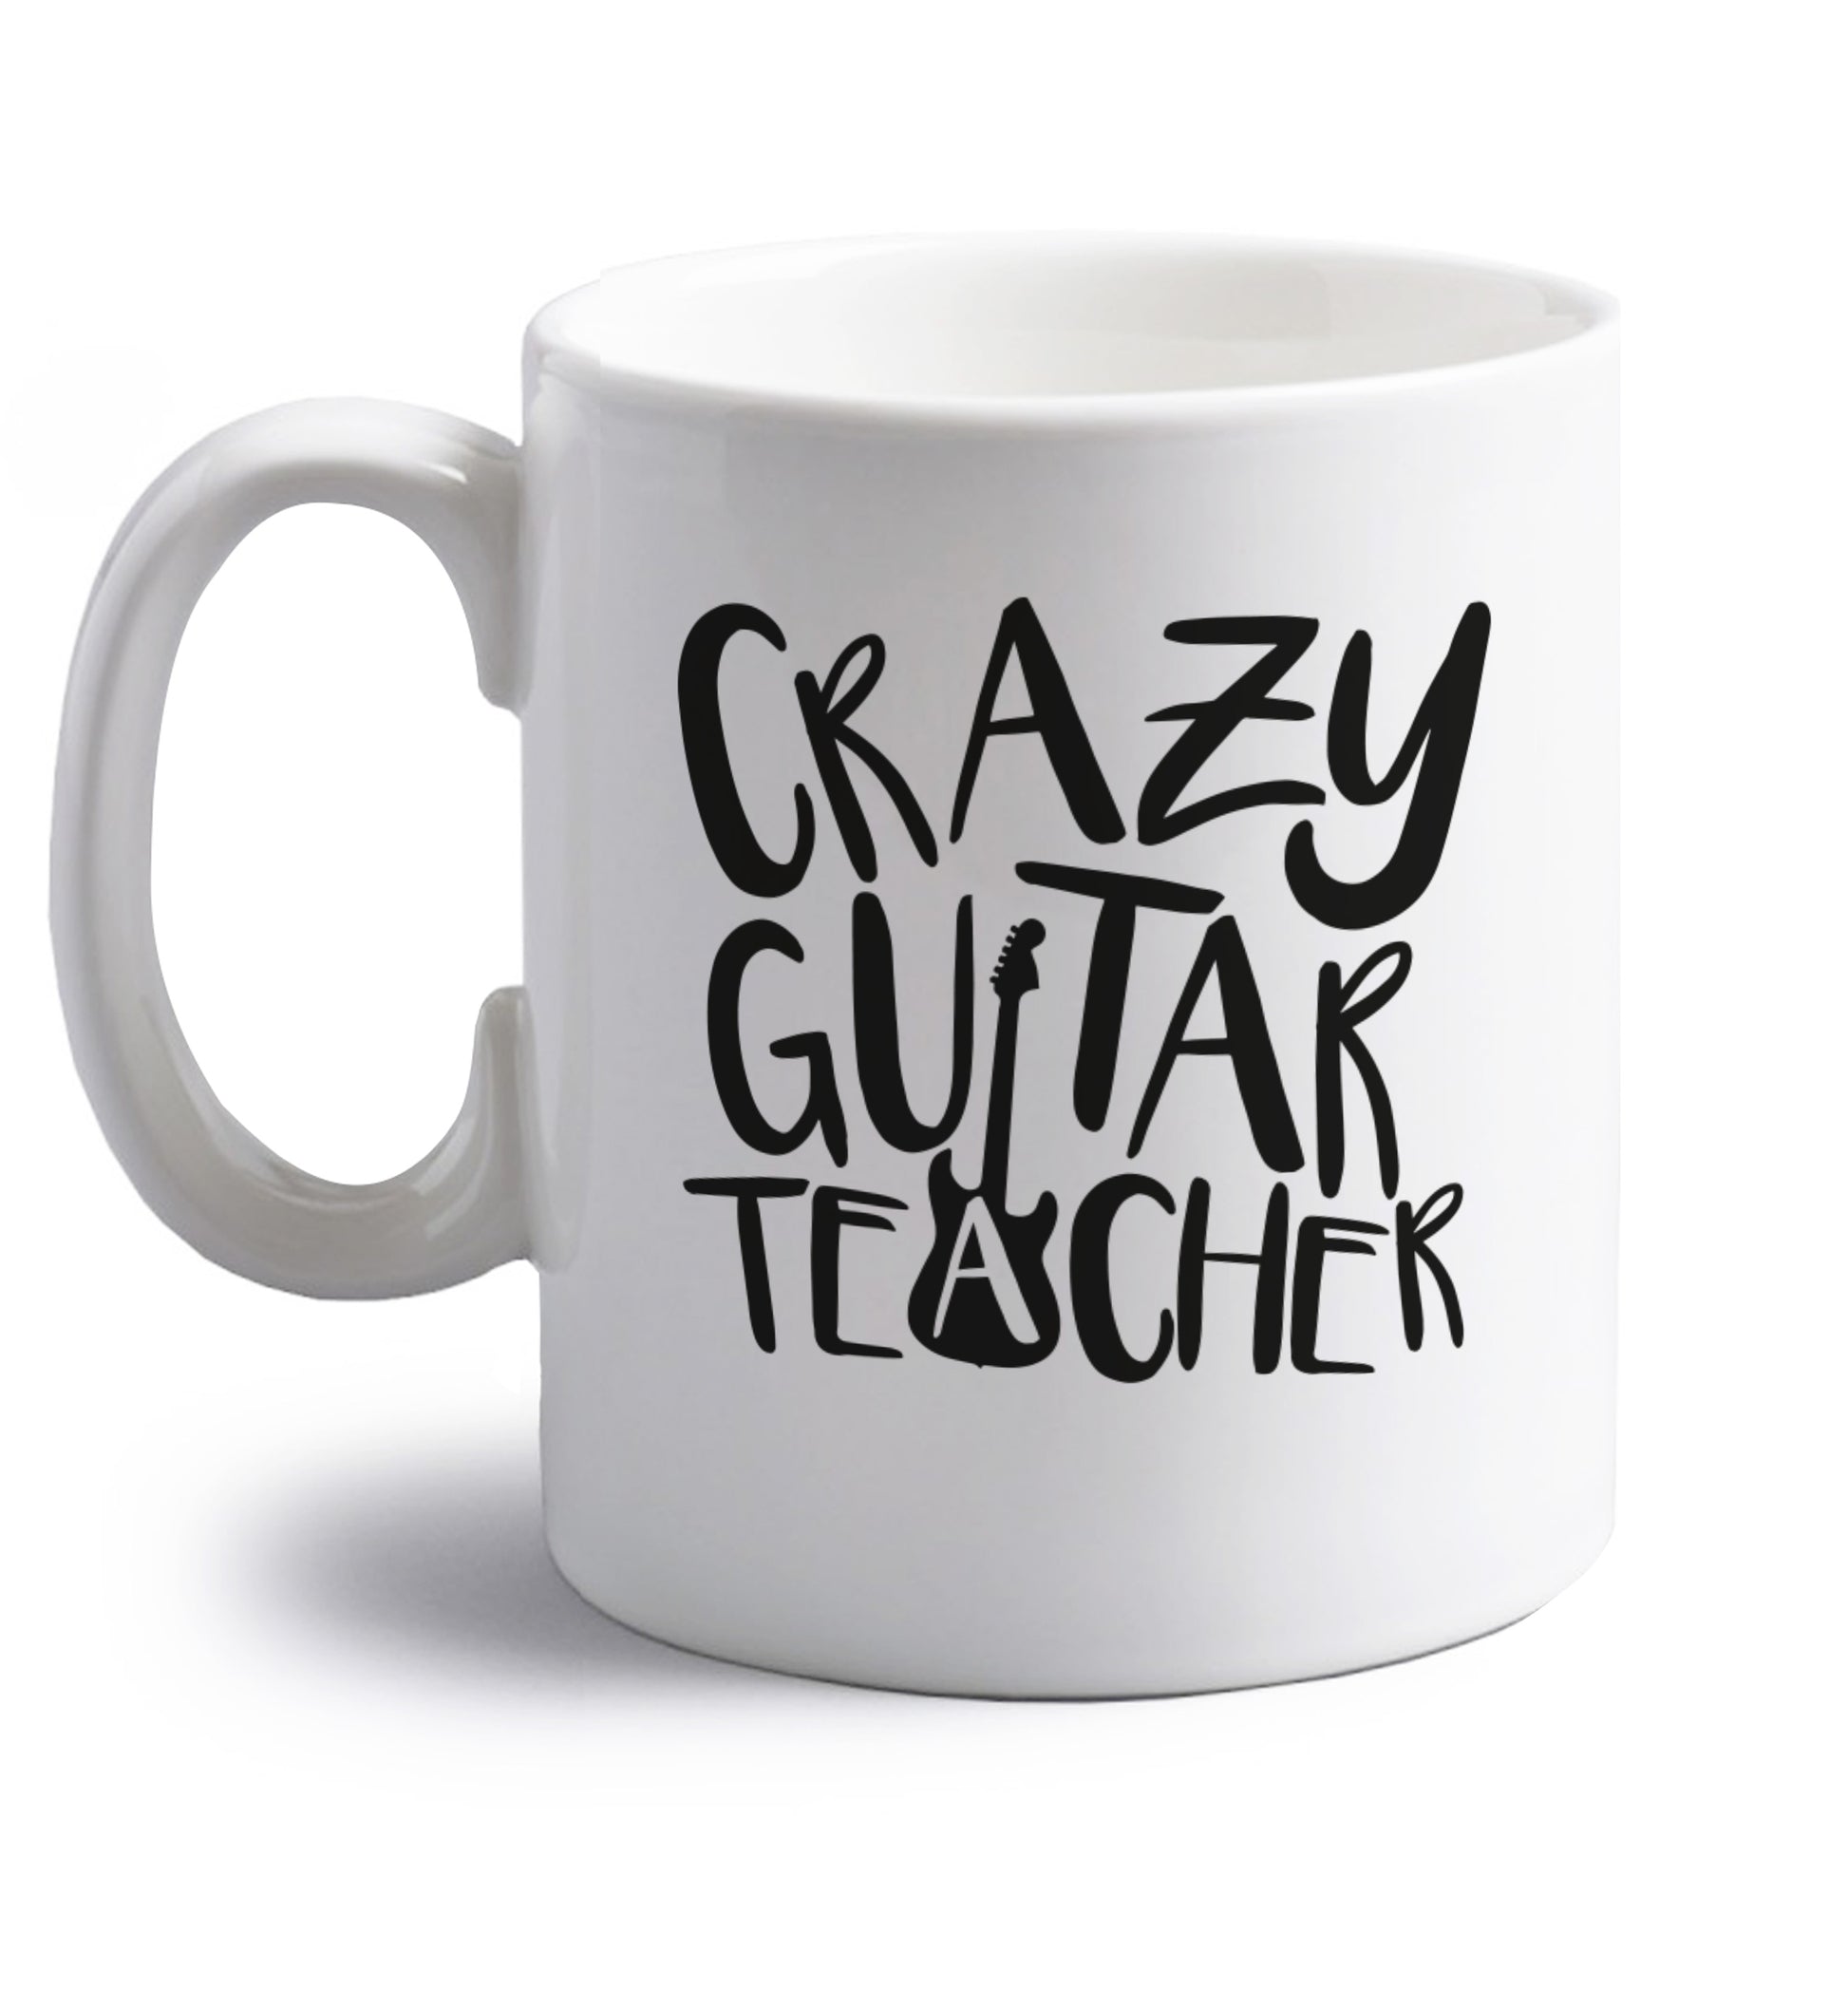 Crazy guitar teacher right handed white ceramic mug 